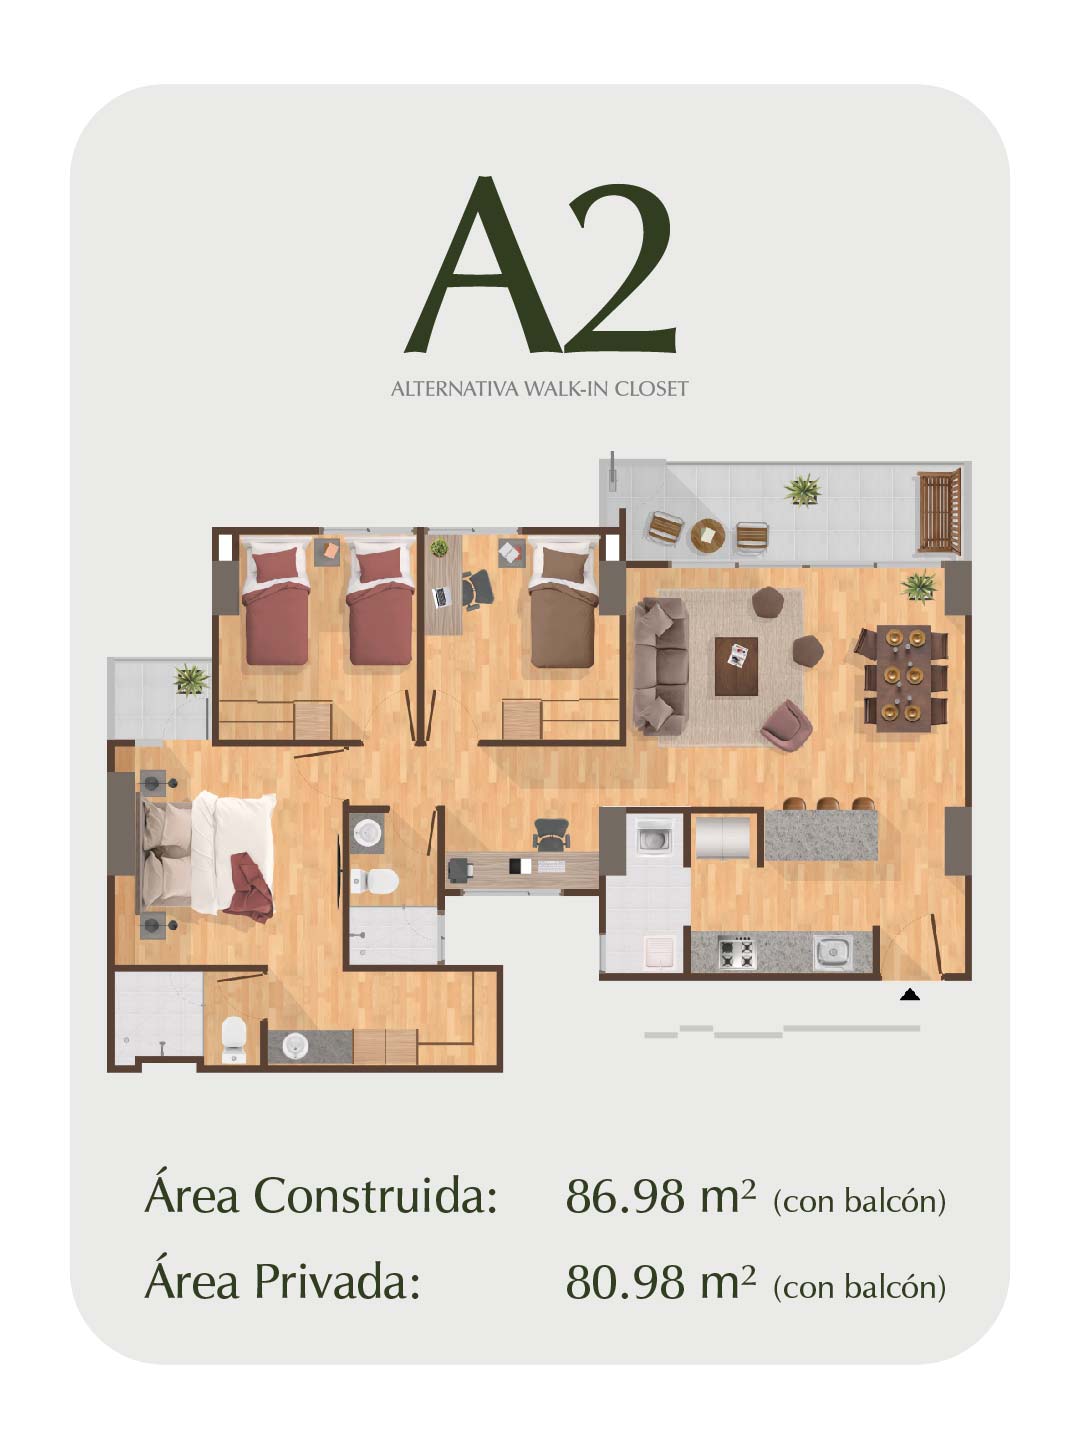 Apto Tipo A2 Palma - Apartamentos Premium en Pereira